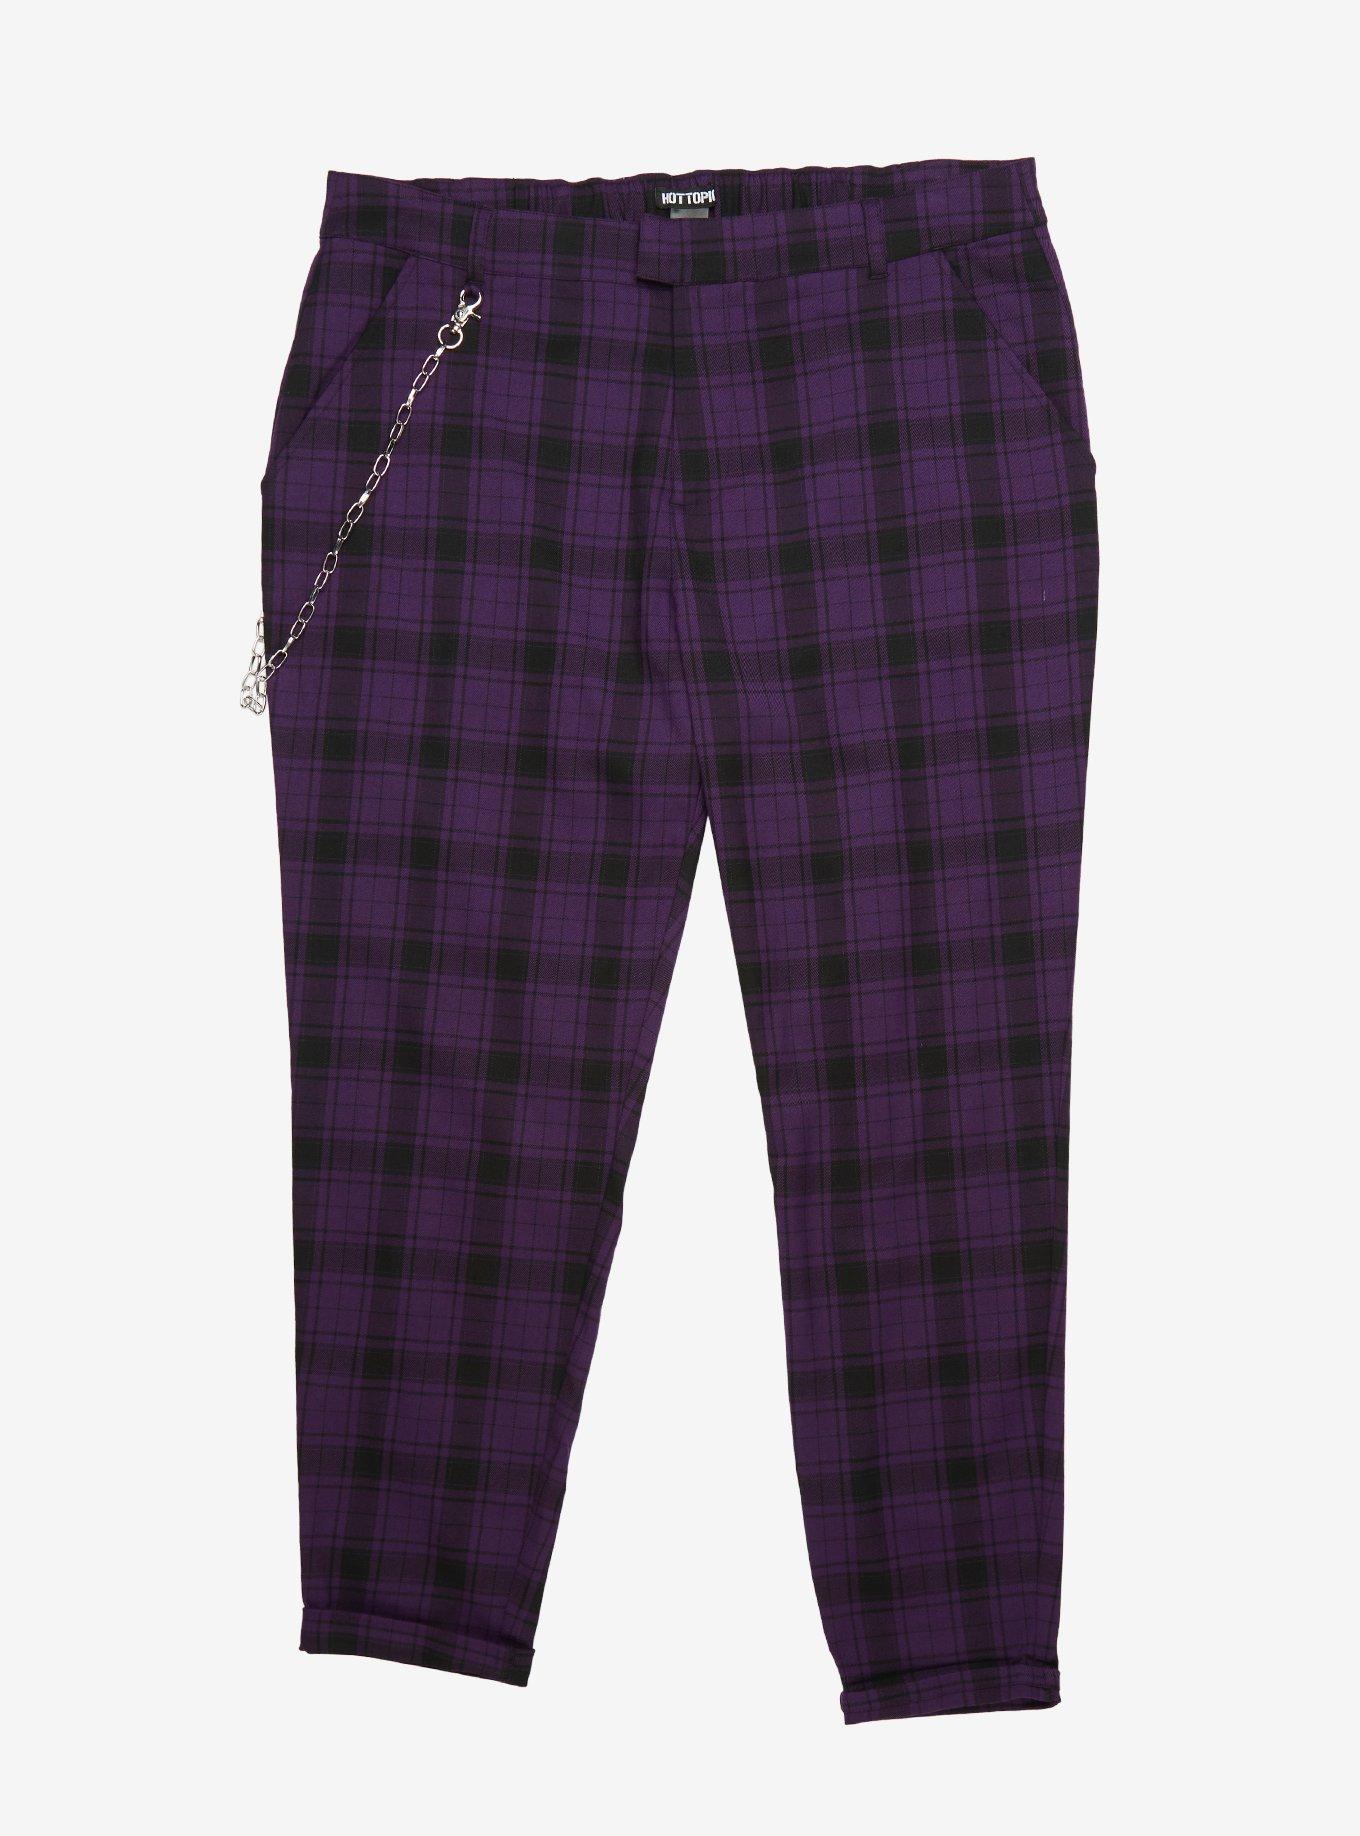 Purple Plaid Pants With Detachable Chain Plus Size, PLAID - PURPLE, hi-res